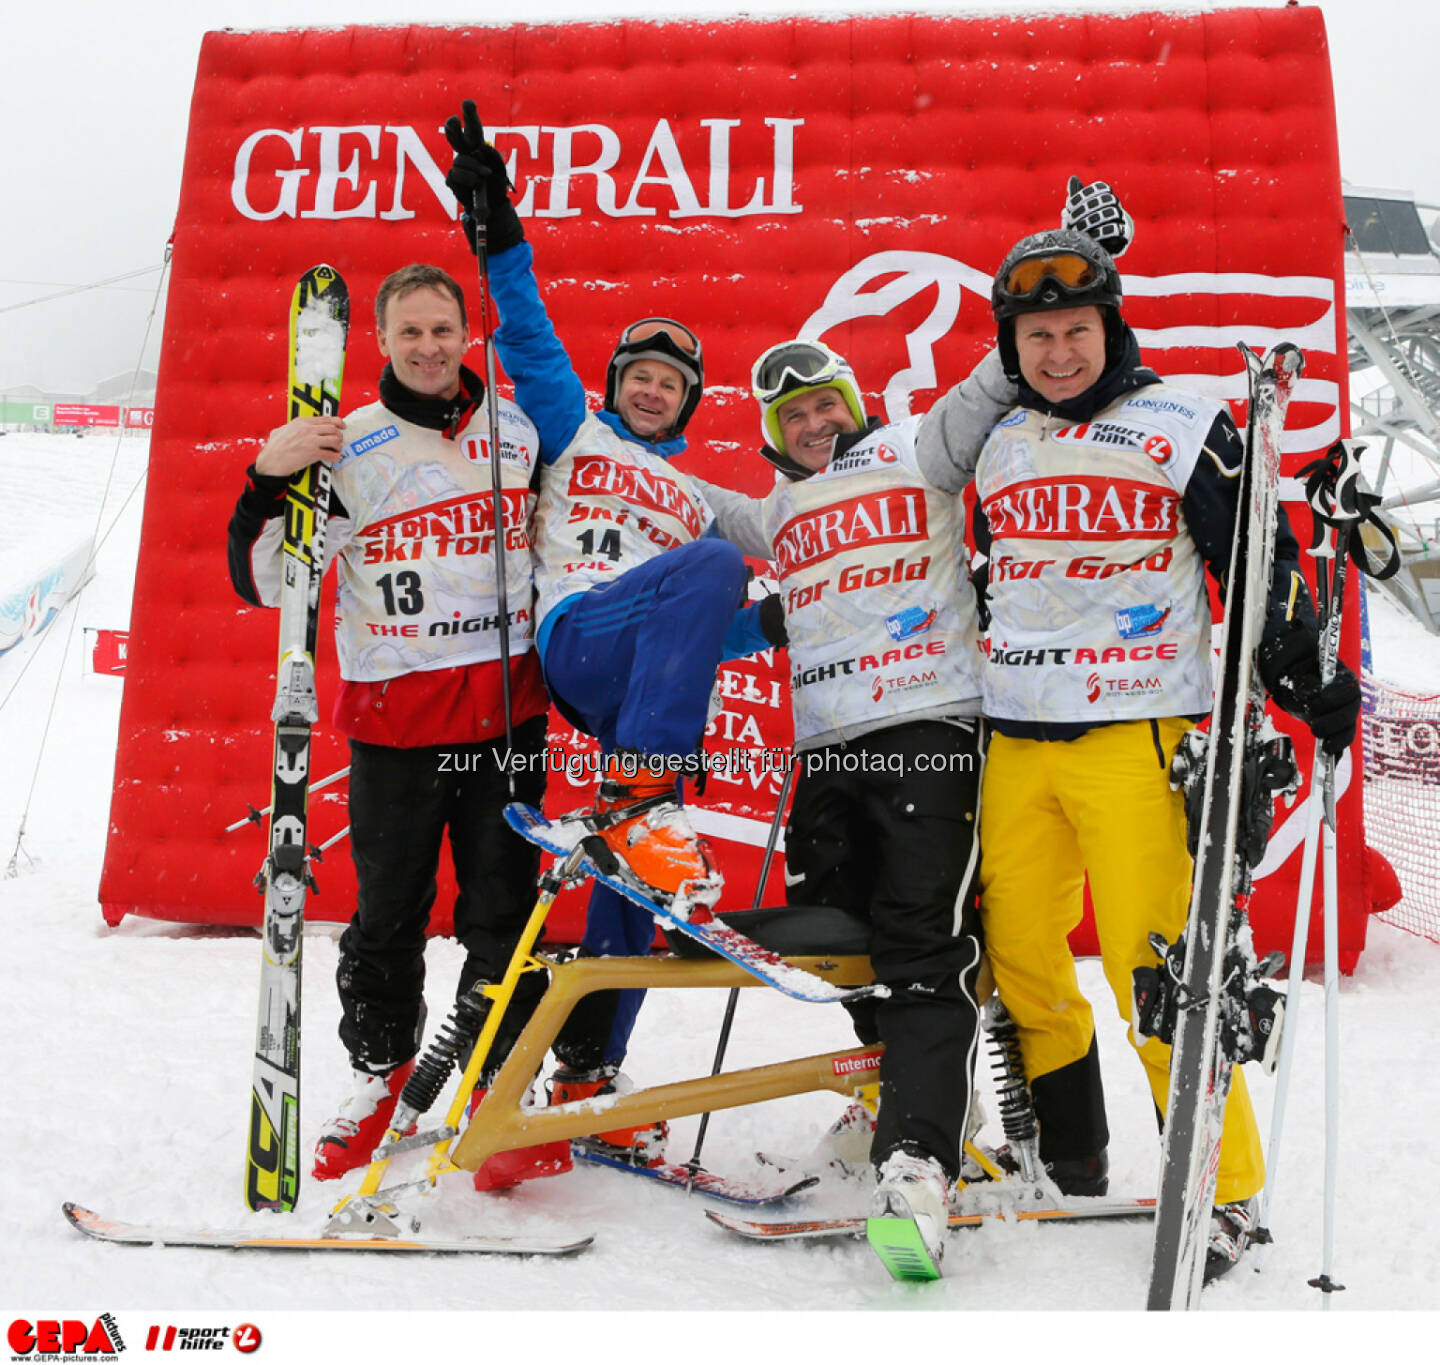 Sporthilfe Charity Race. Bild zeigt Wolfgang Knaller, Roland Koenigshofer, Franz Stocher und Walter Kroneisl (Team Ski for Gold).
Foto: GEPA pictures/ Wolfgang Grebien